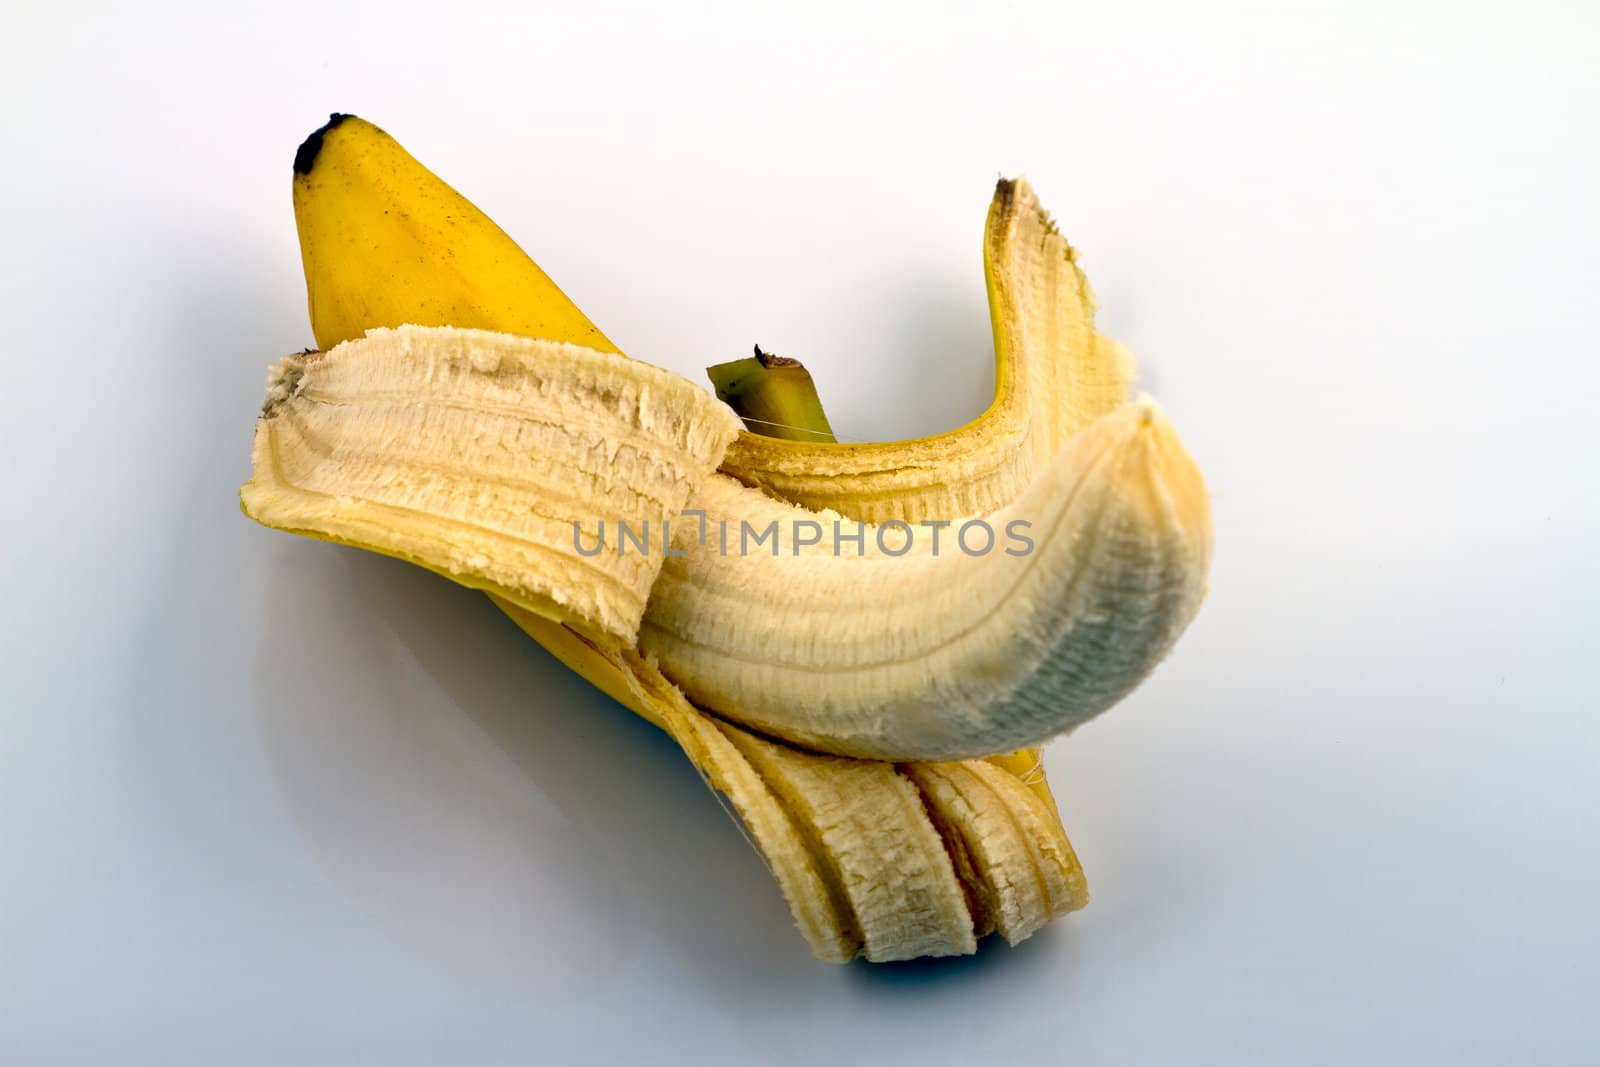 Peeled Banana by lavsen